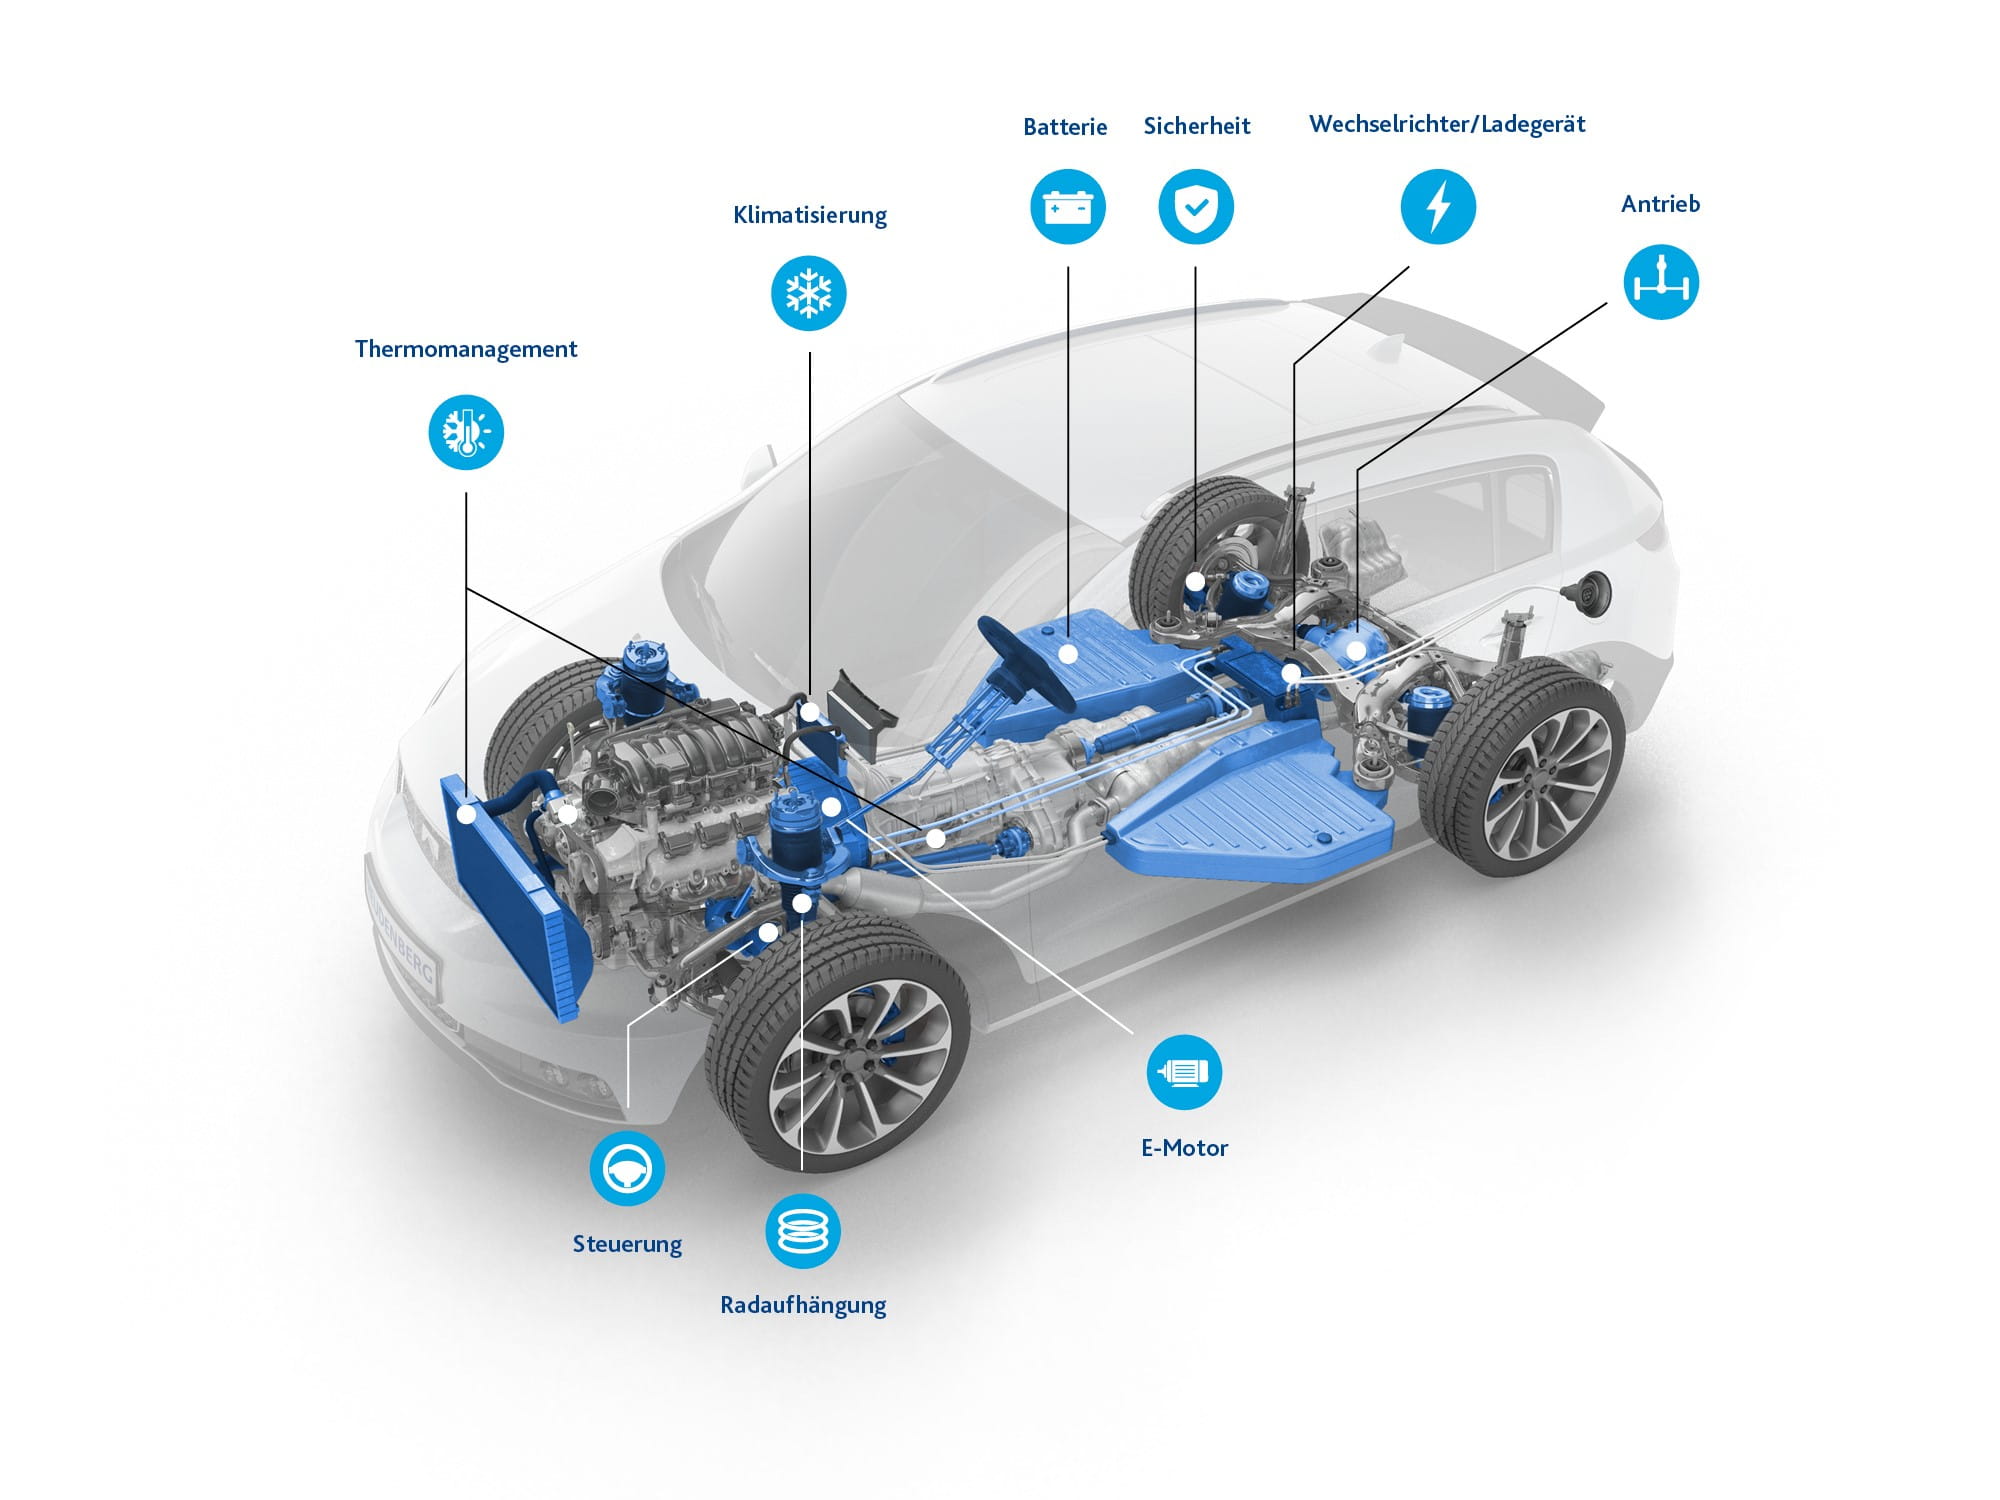 3D Modell eines SUV mit Erklärung der einzelnen Komponenten